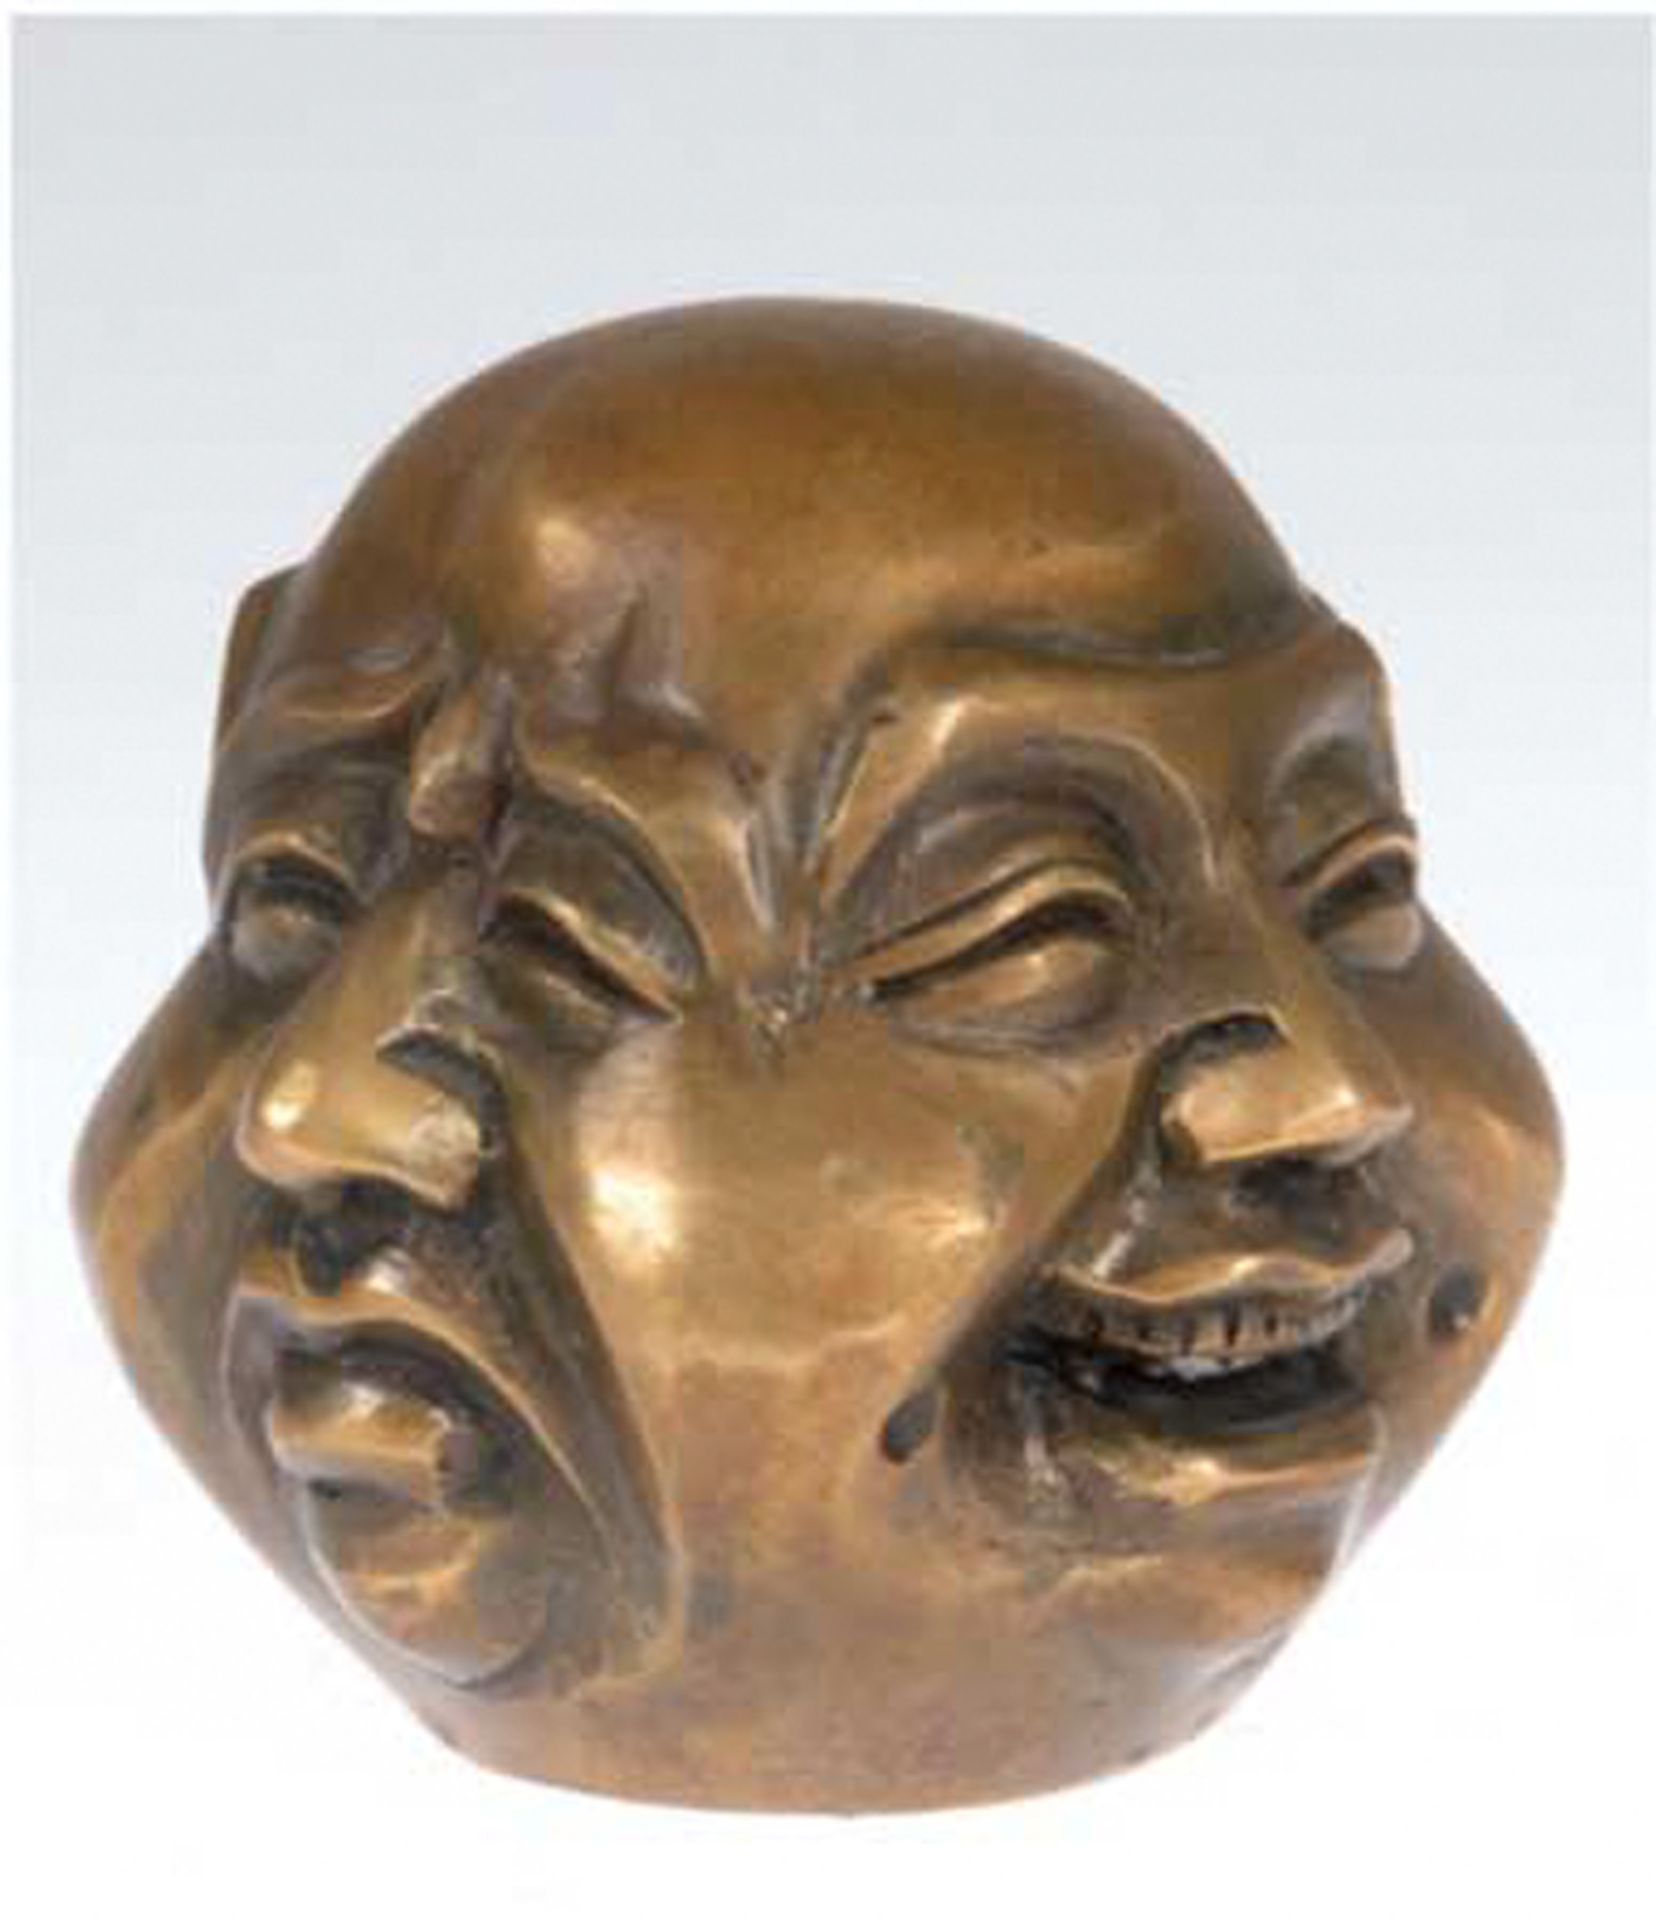 Buddhakopf mit 4 Gesichtern, Bronze, gemarkt, stellt 4 Stimmungen dar, Freude,Traurigkeit, Wu